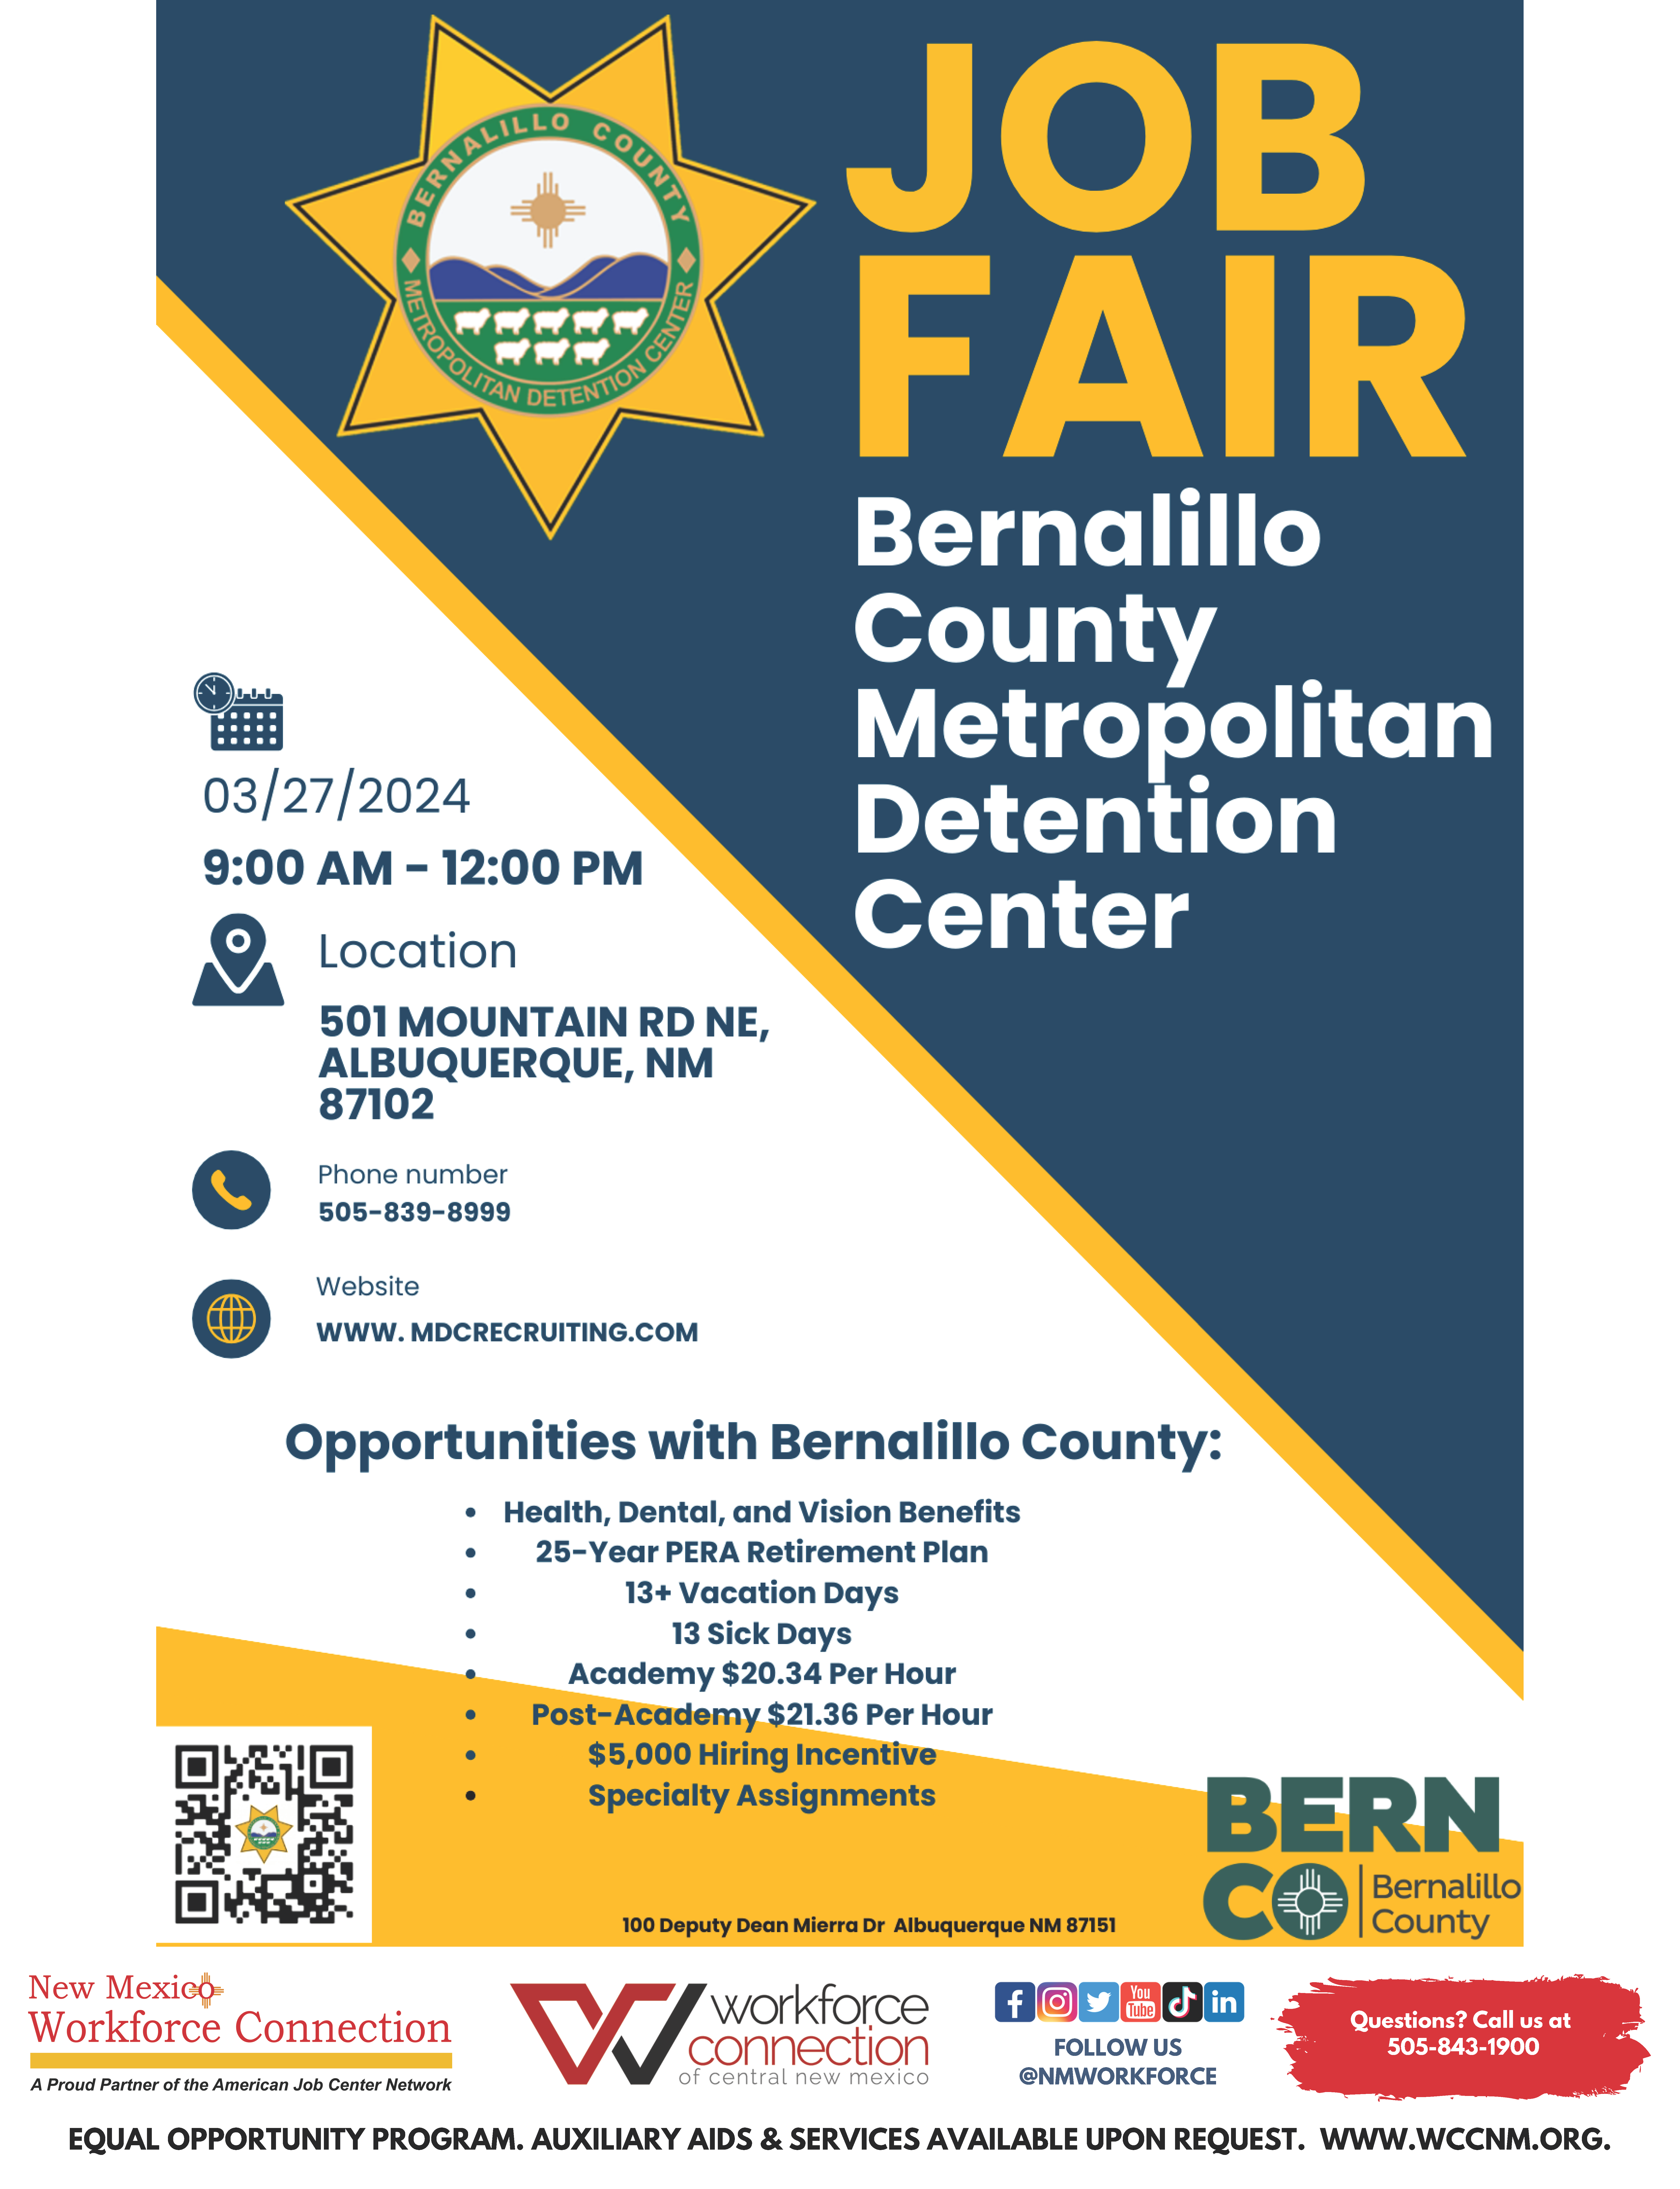 Job Fair Bernalillo County Metropolitan Detention Center flyer